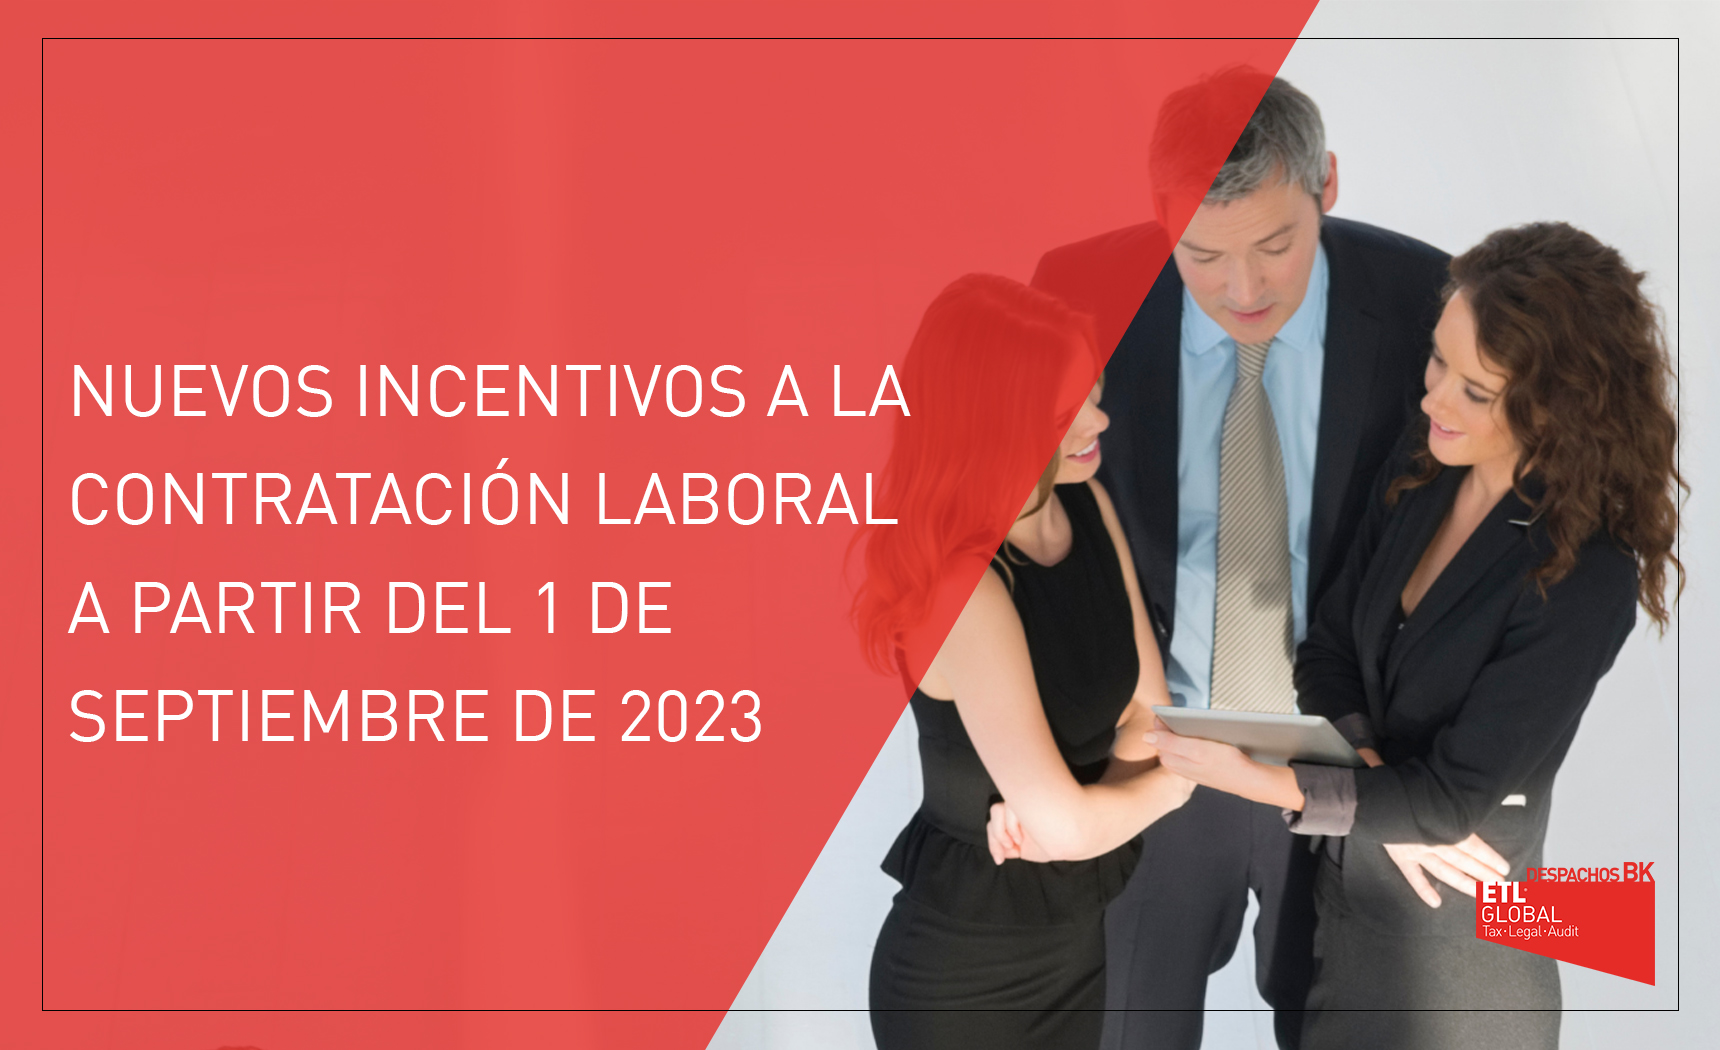 Nuevos incentivos a la contratación laboral aplicables desde septiembre de 2023